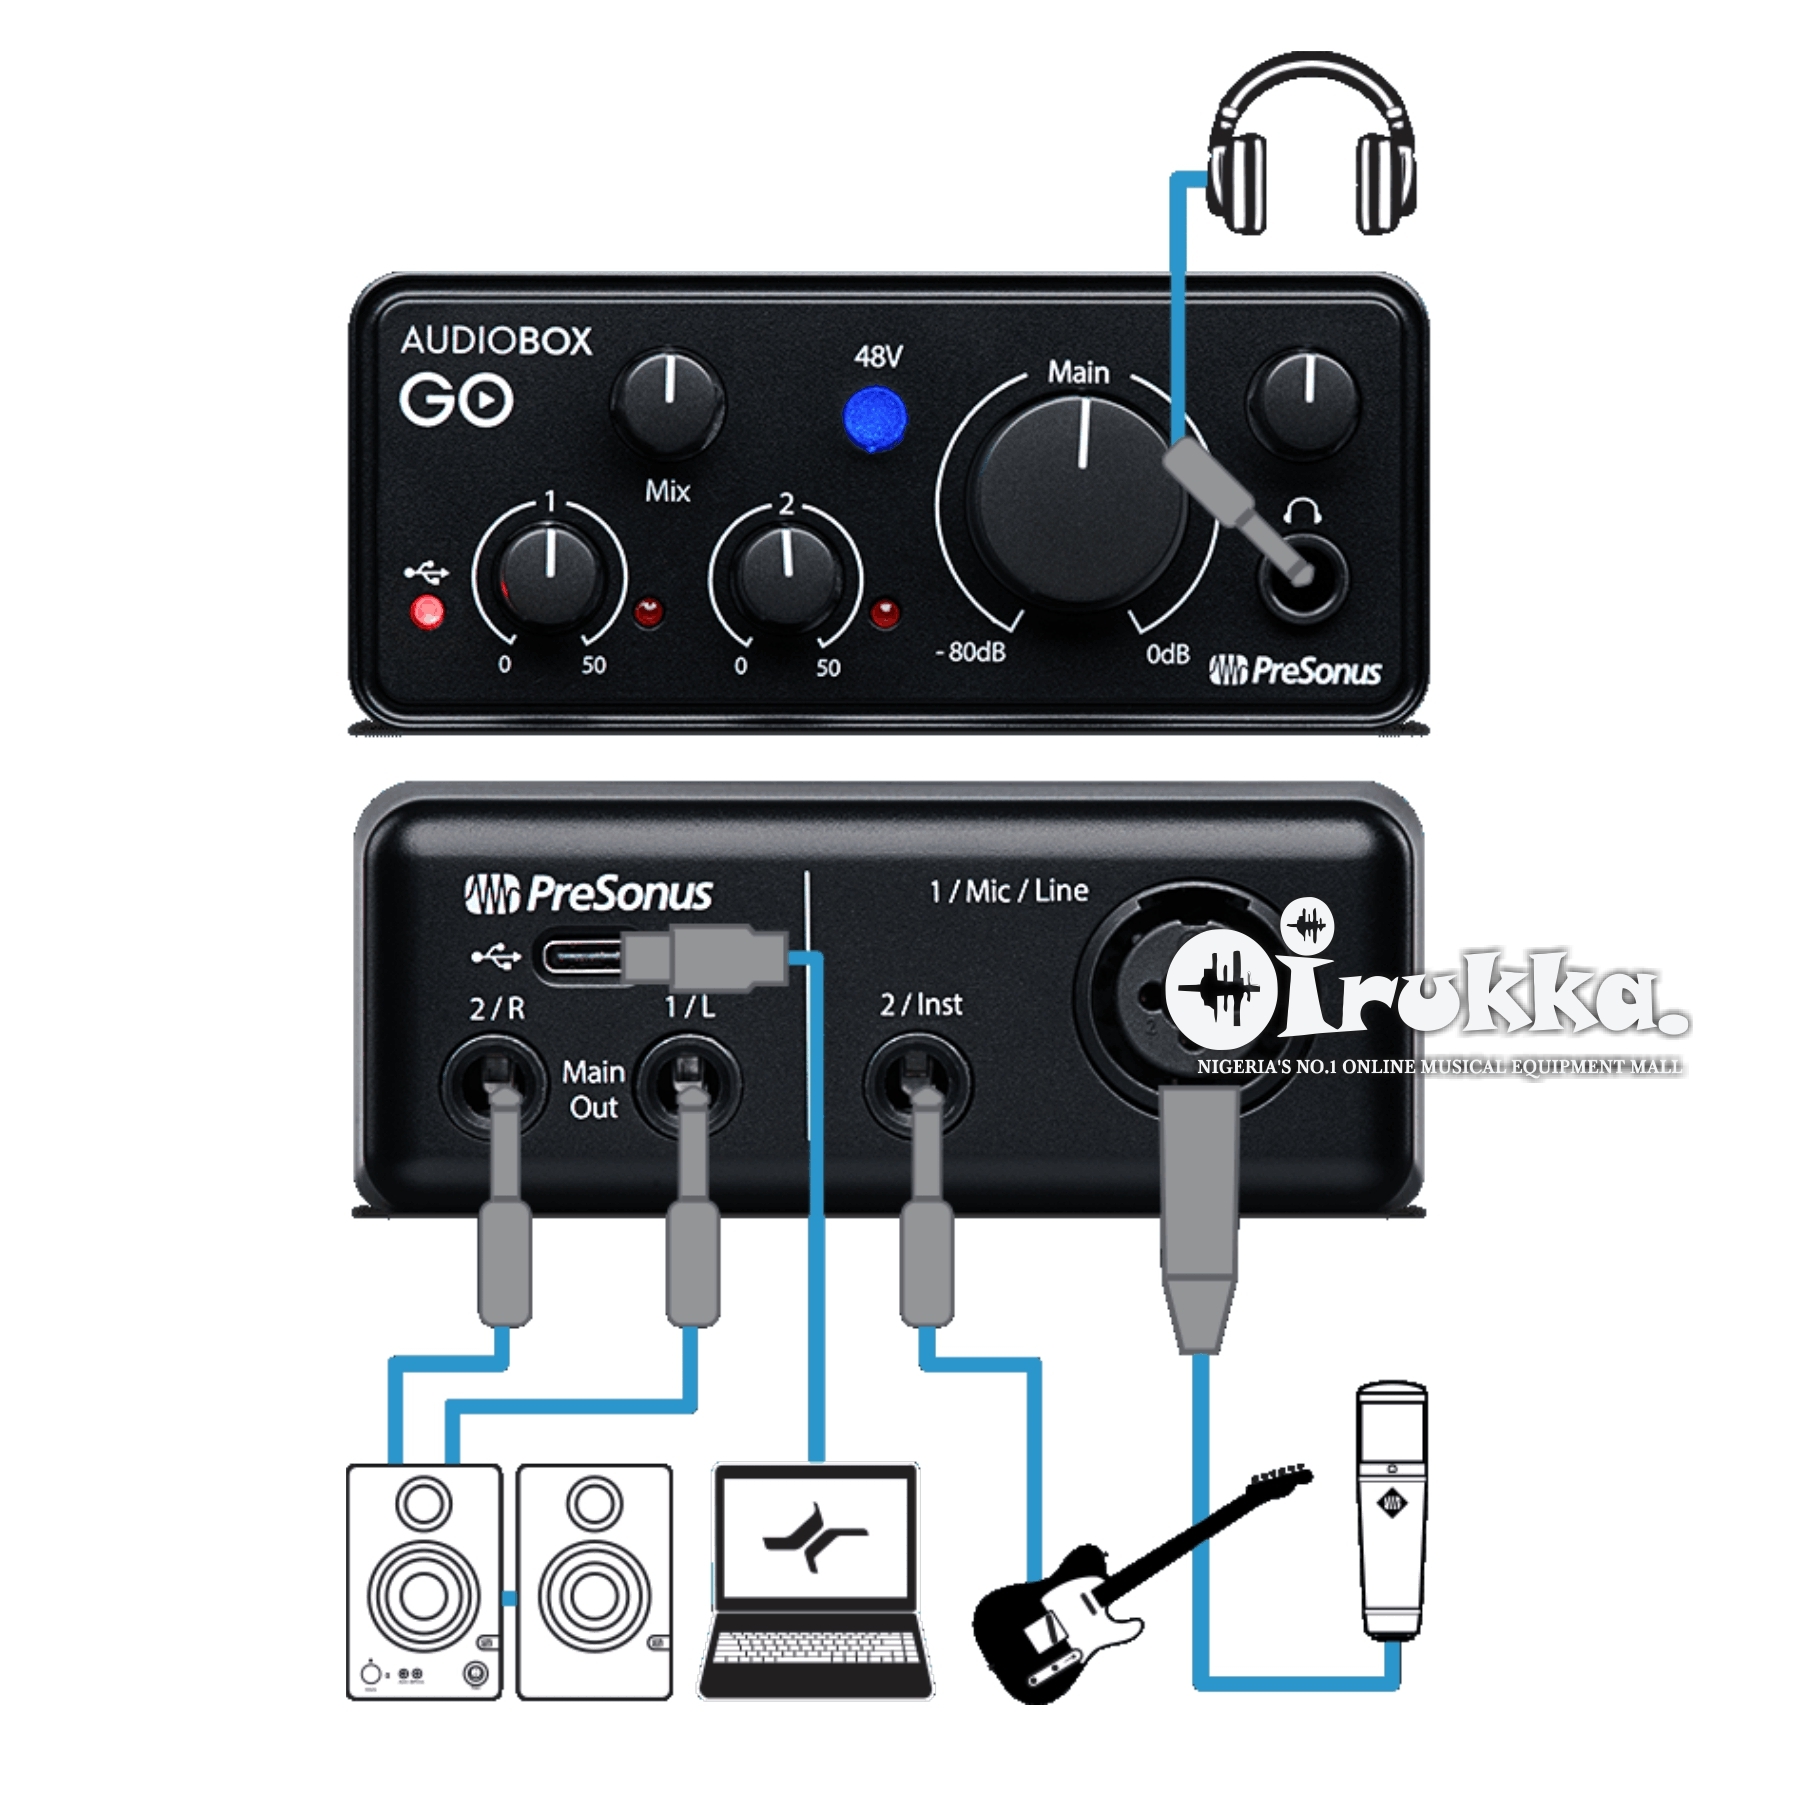 PreSonus　GO　AudioBox　New　Features　GO　Price　AudioBox　of　The